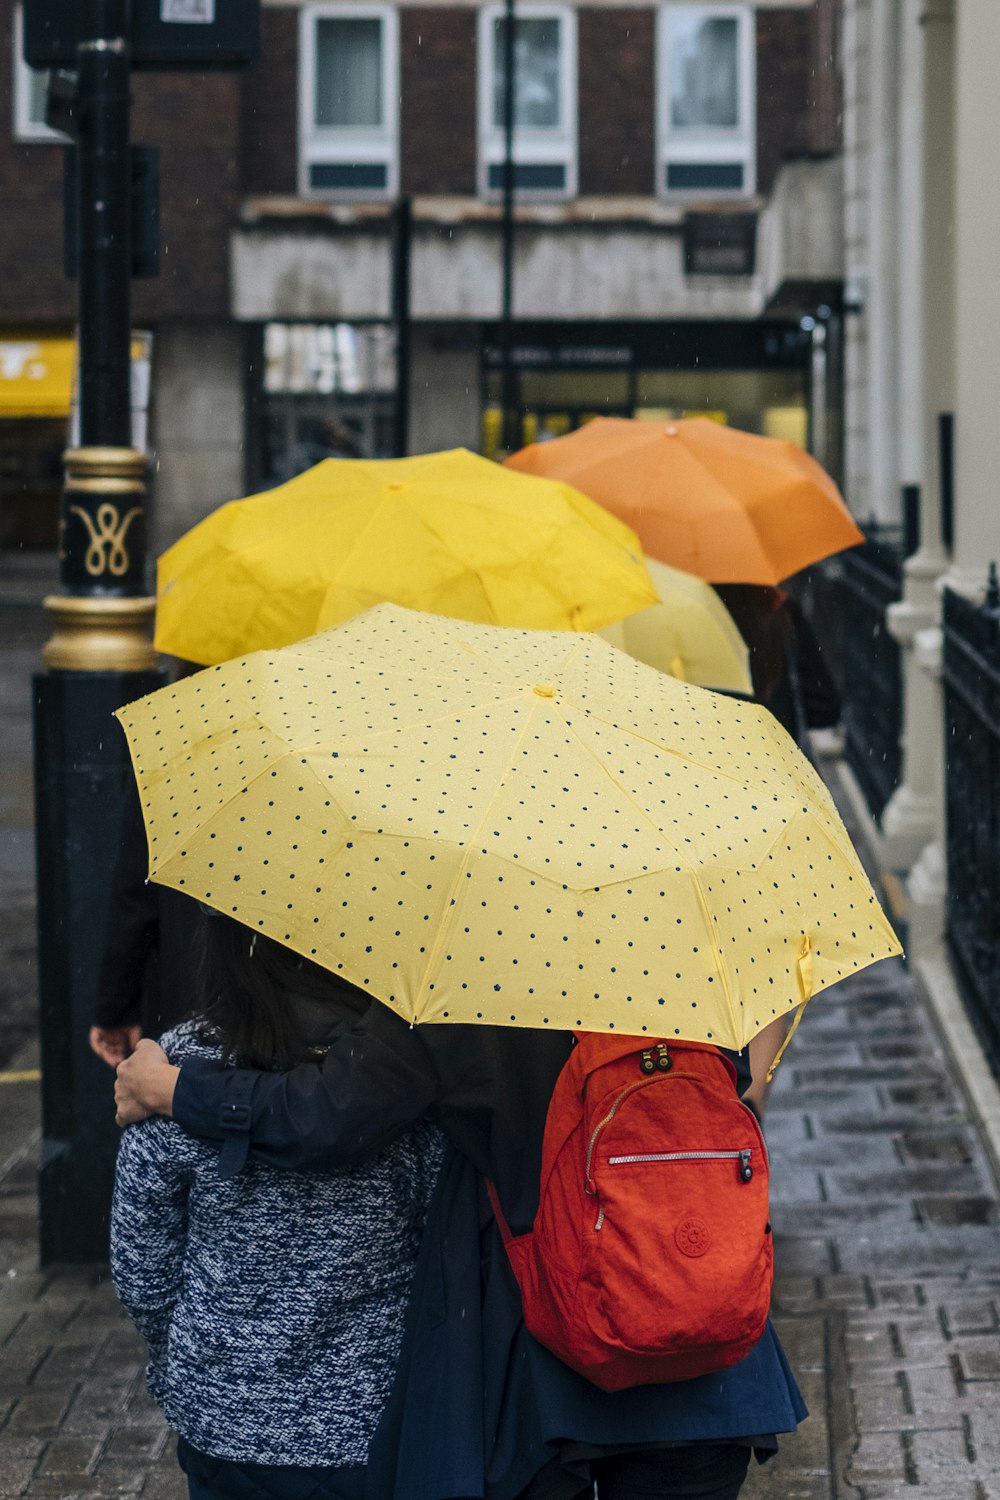 yellow and orange umbrellas